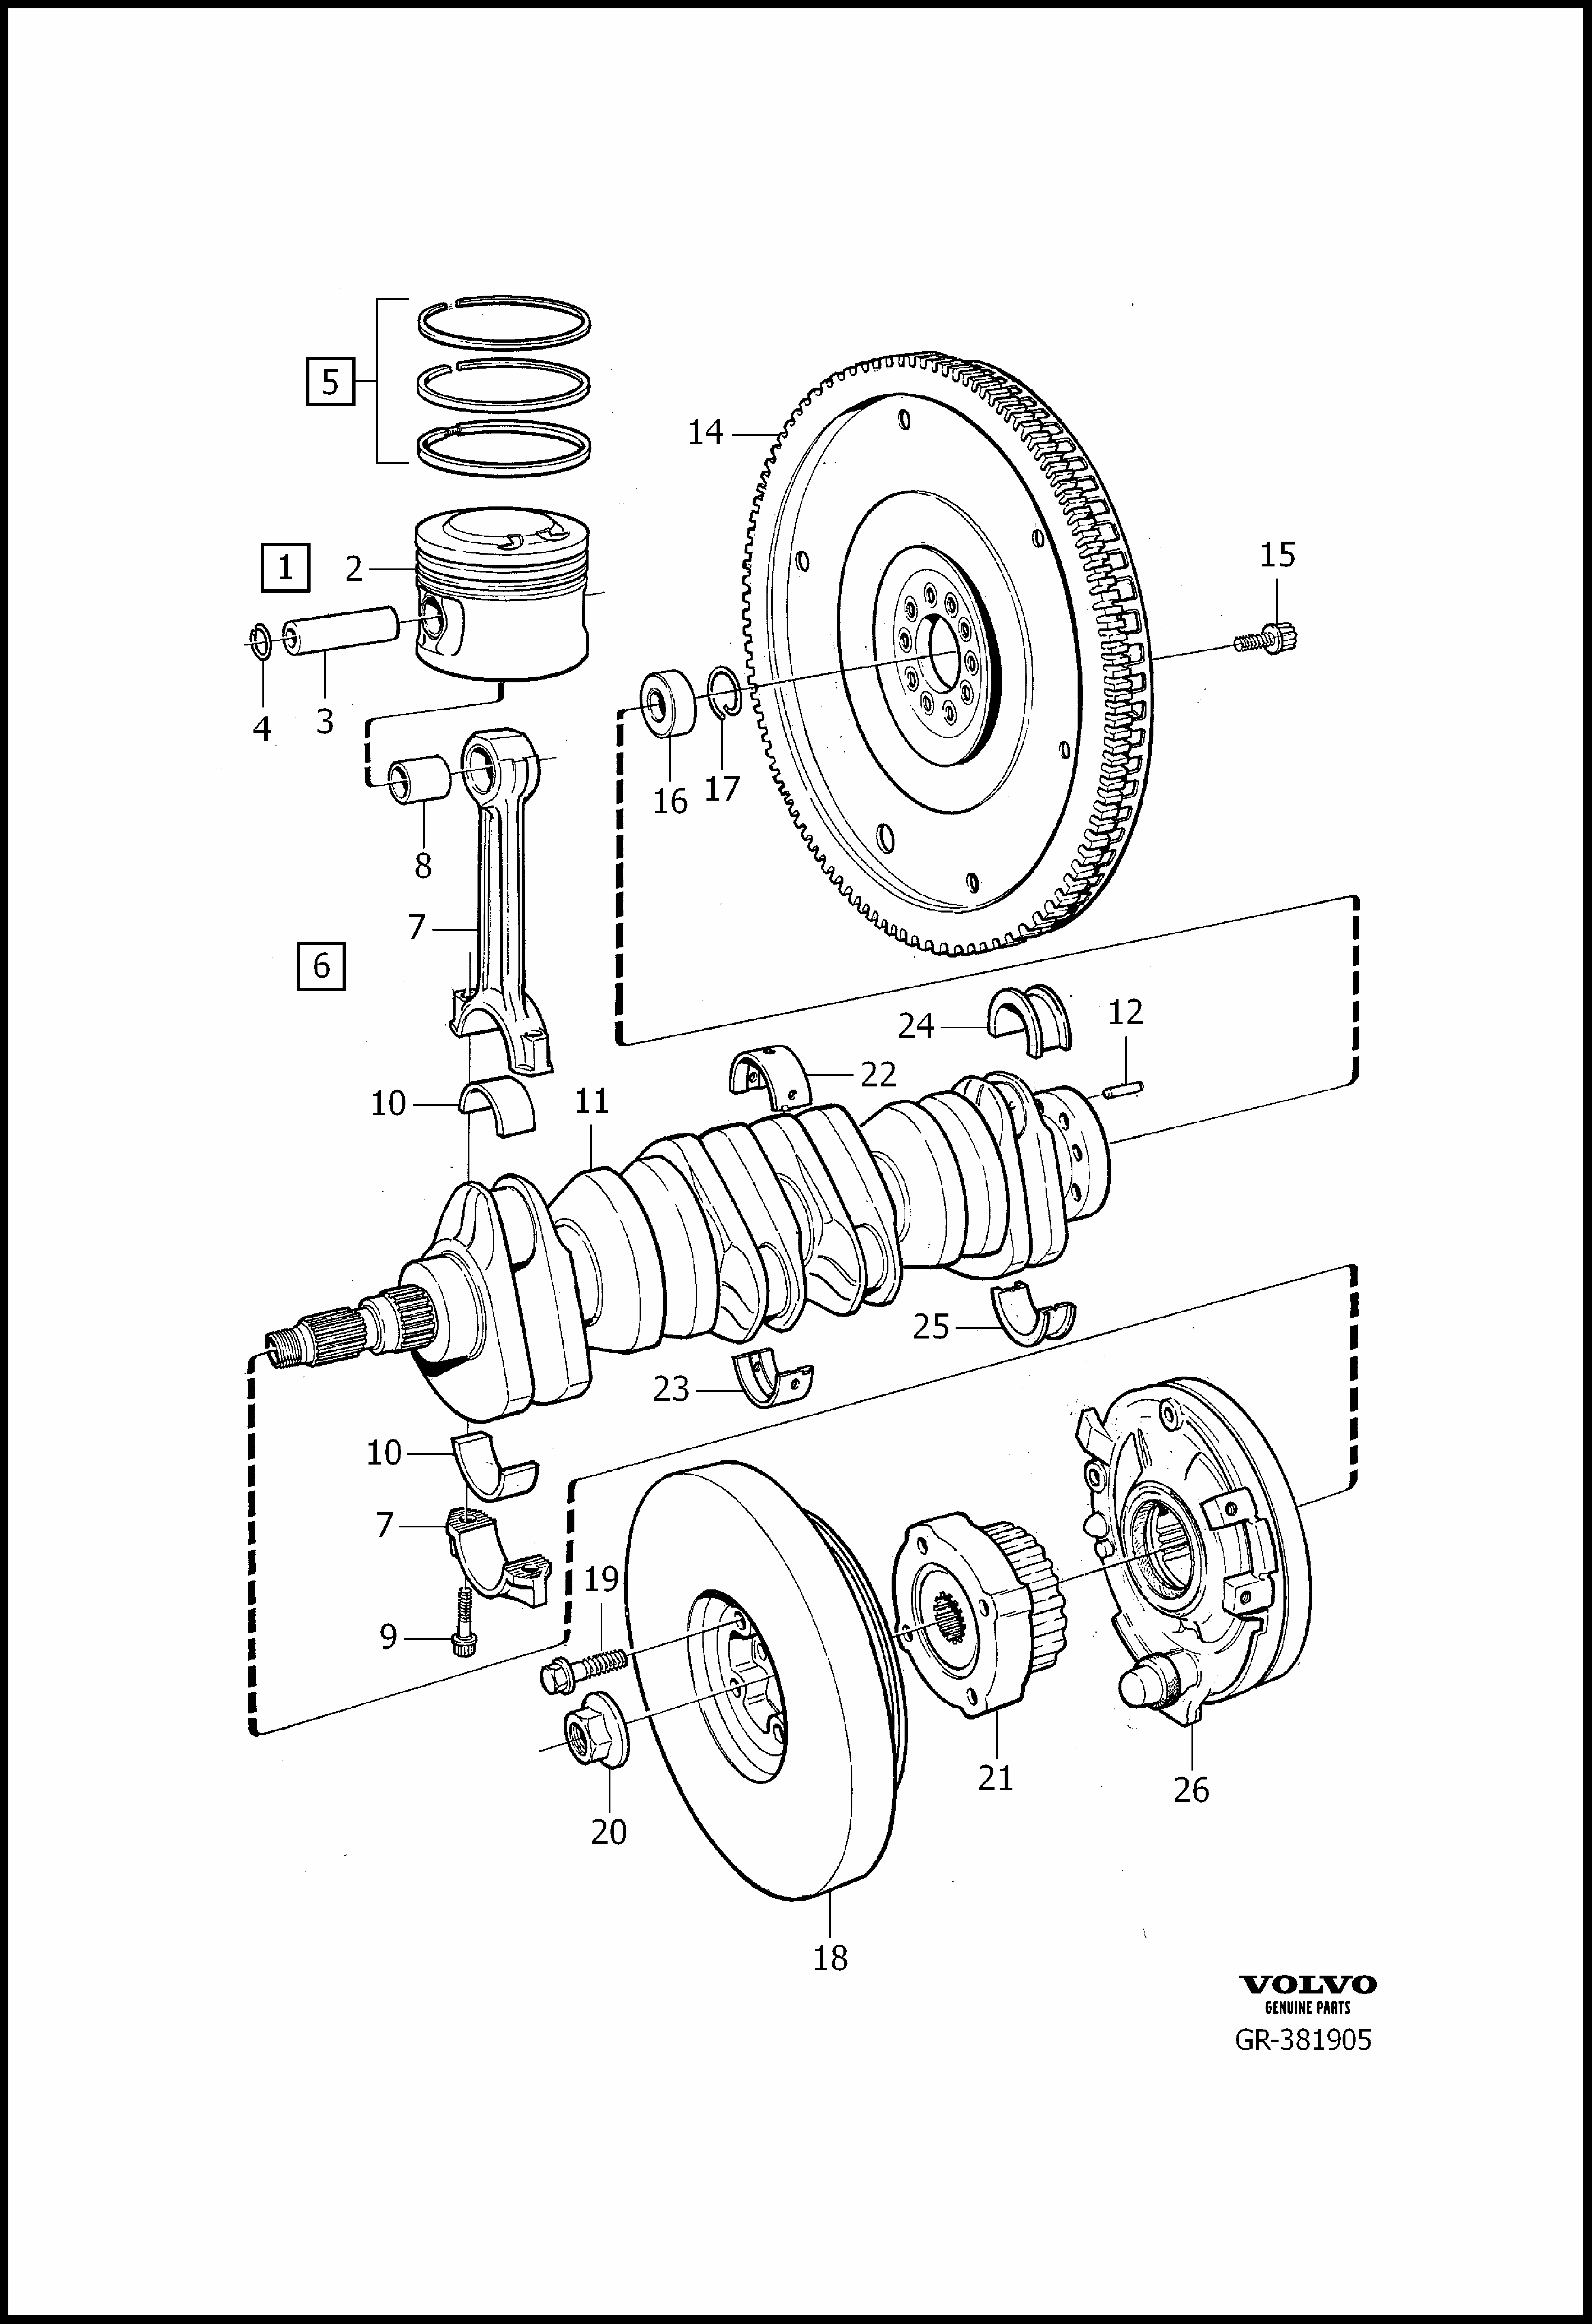 crank mechanism for Volvo 960 960